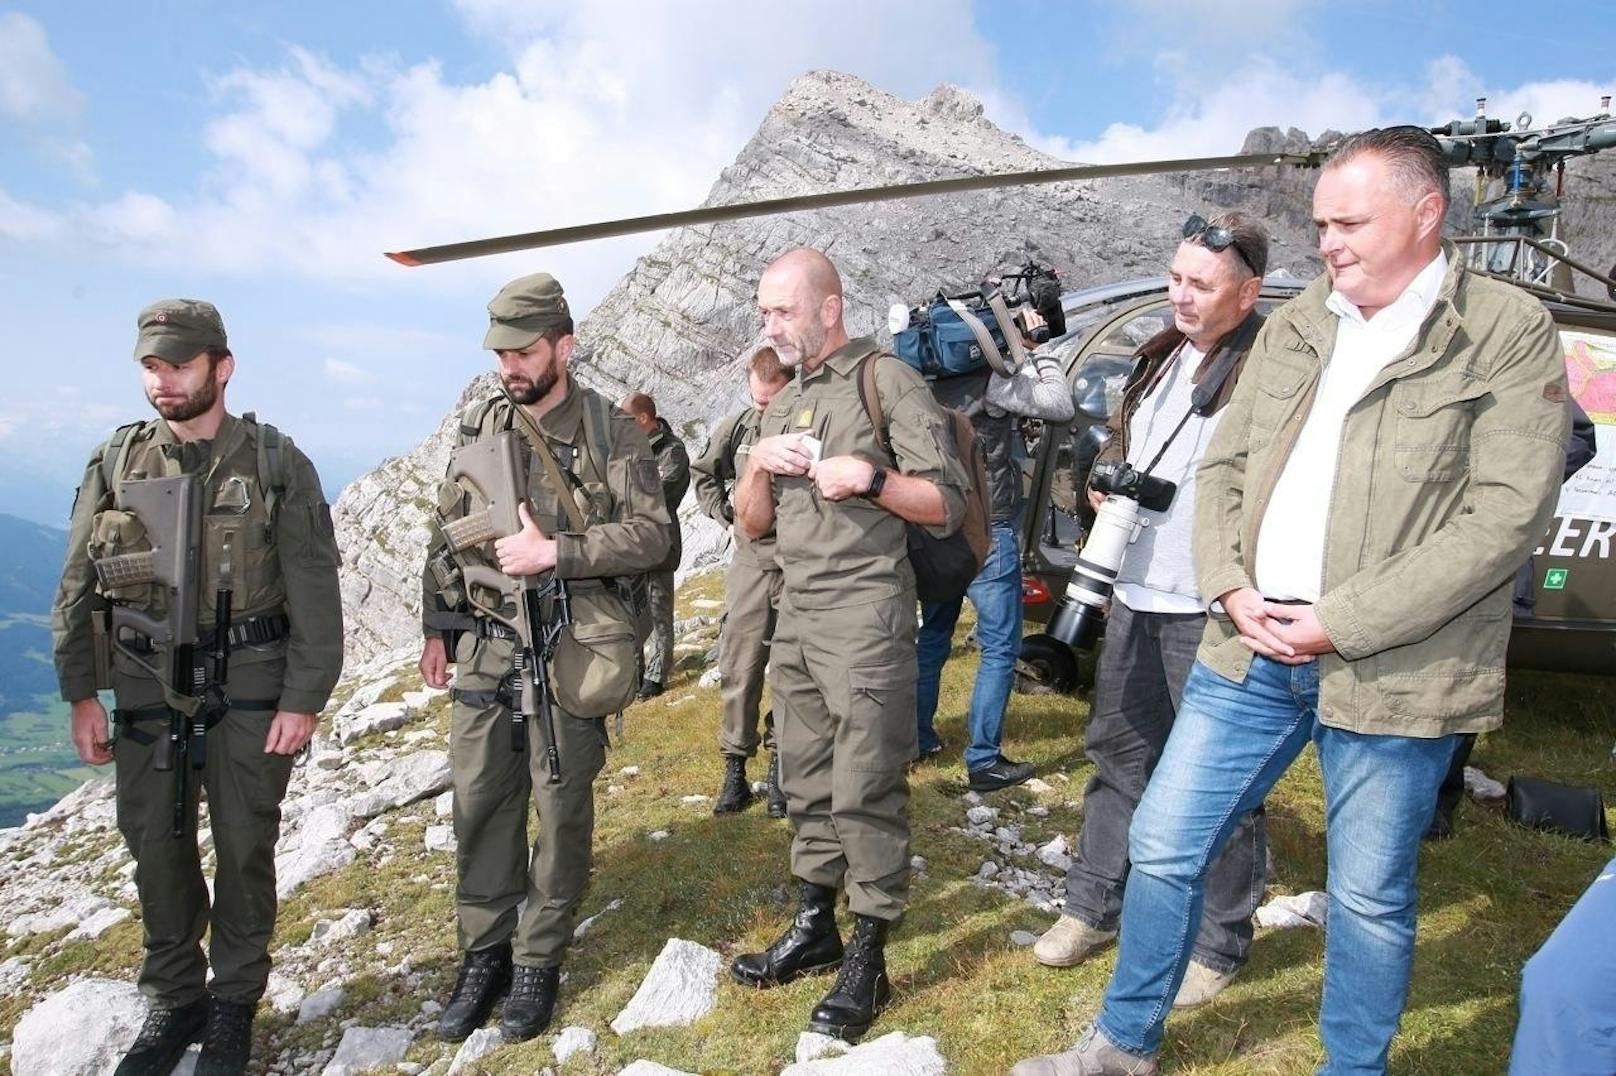 Minister Doskozil besucht das Gebirgskampfzentrum in Tirol